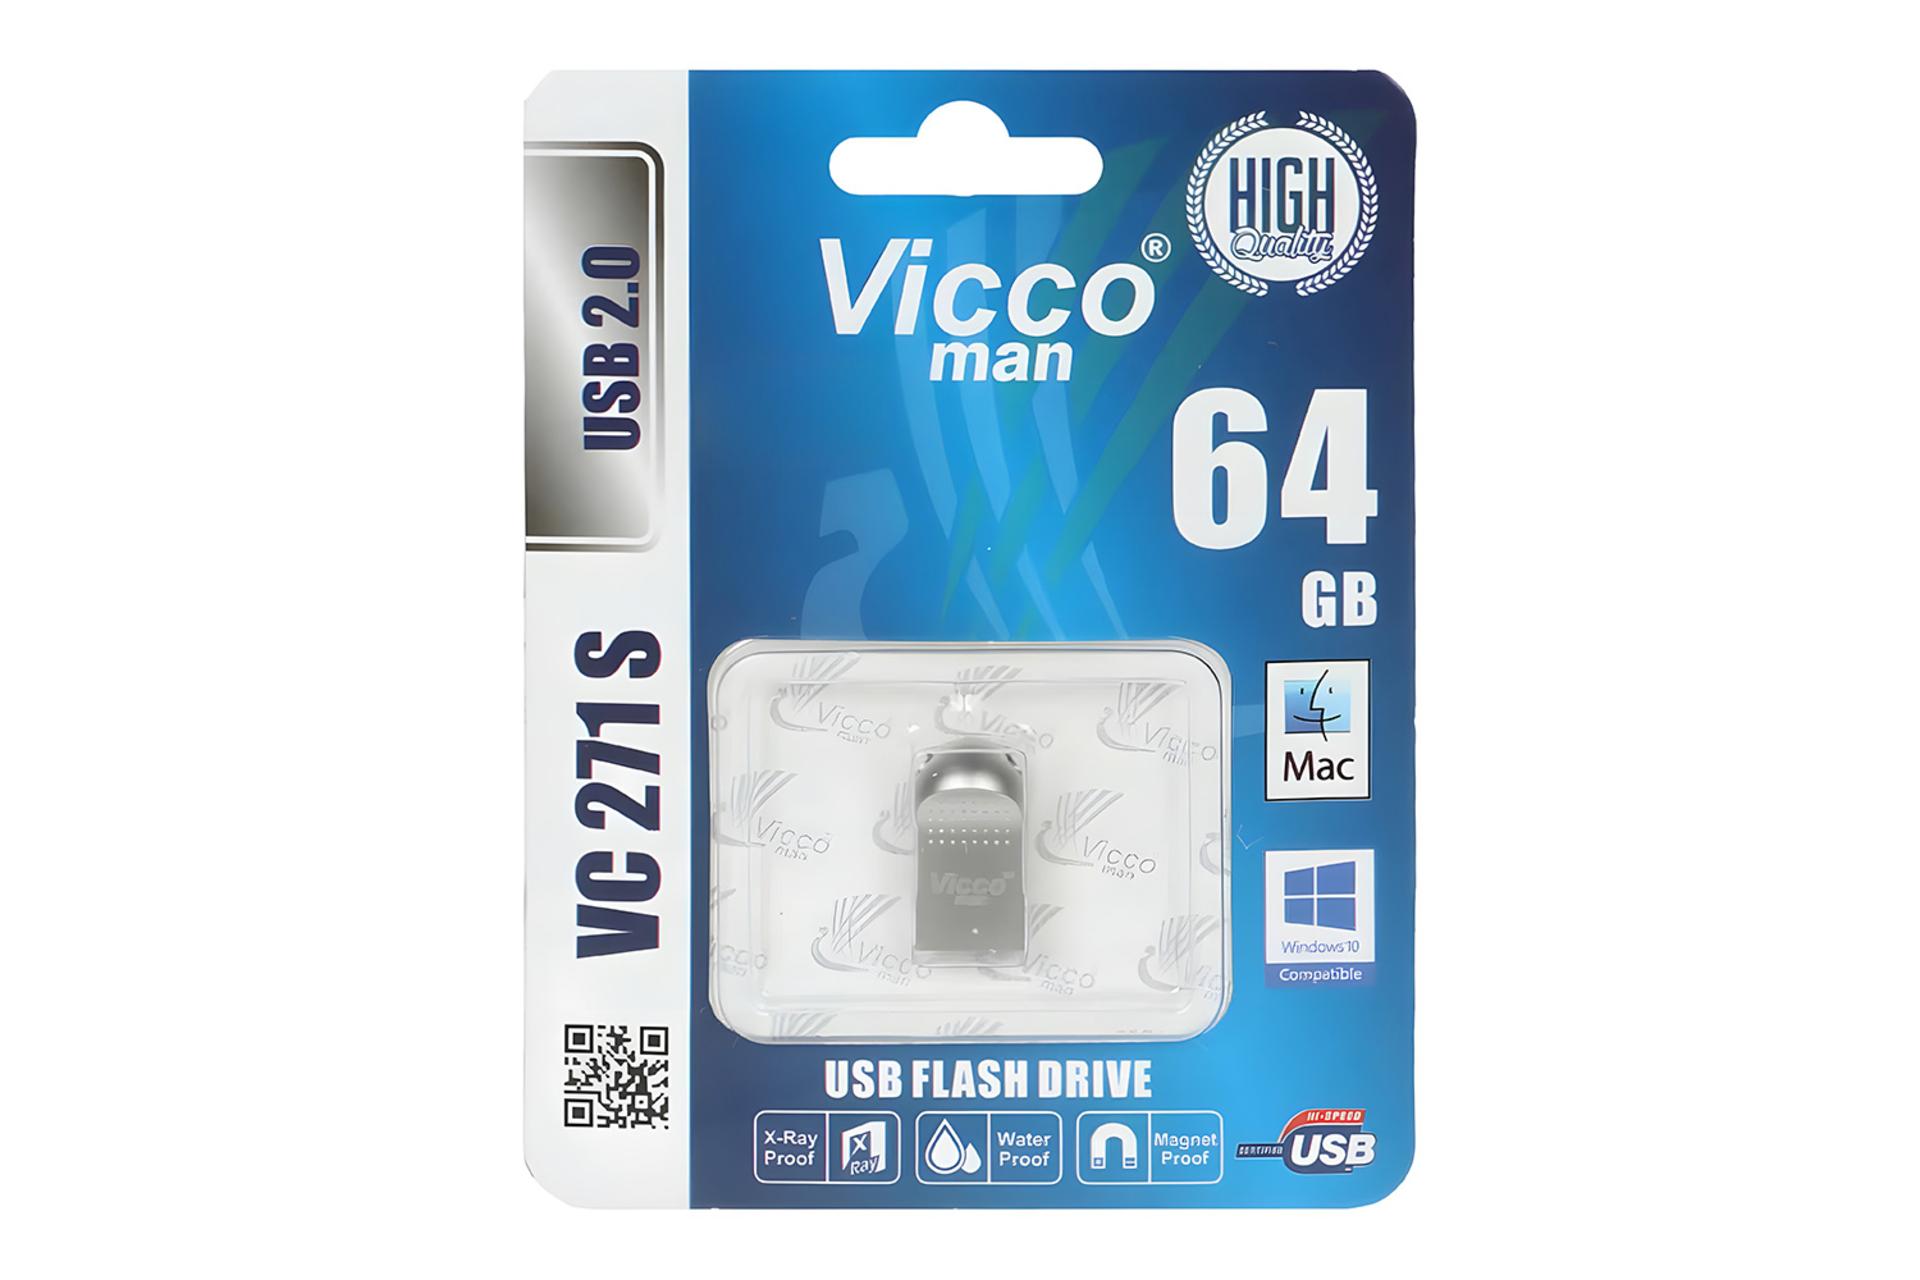 جعبه فلش مموری ویکومن Viccoman VC271 S 64GB USB 2.0